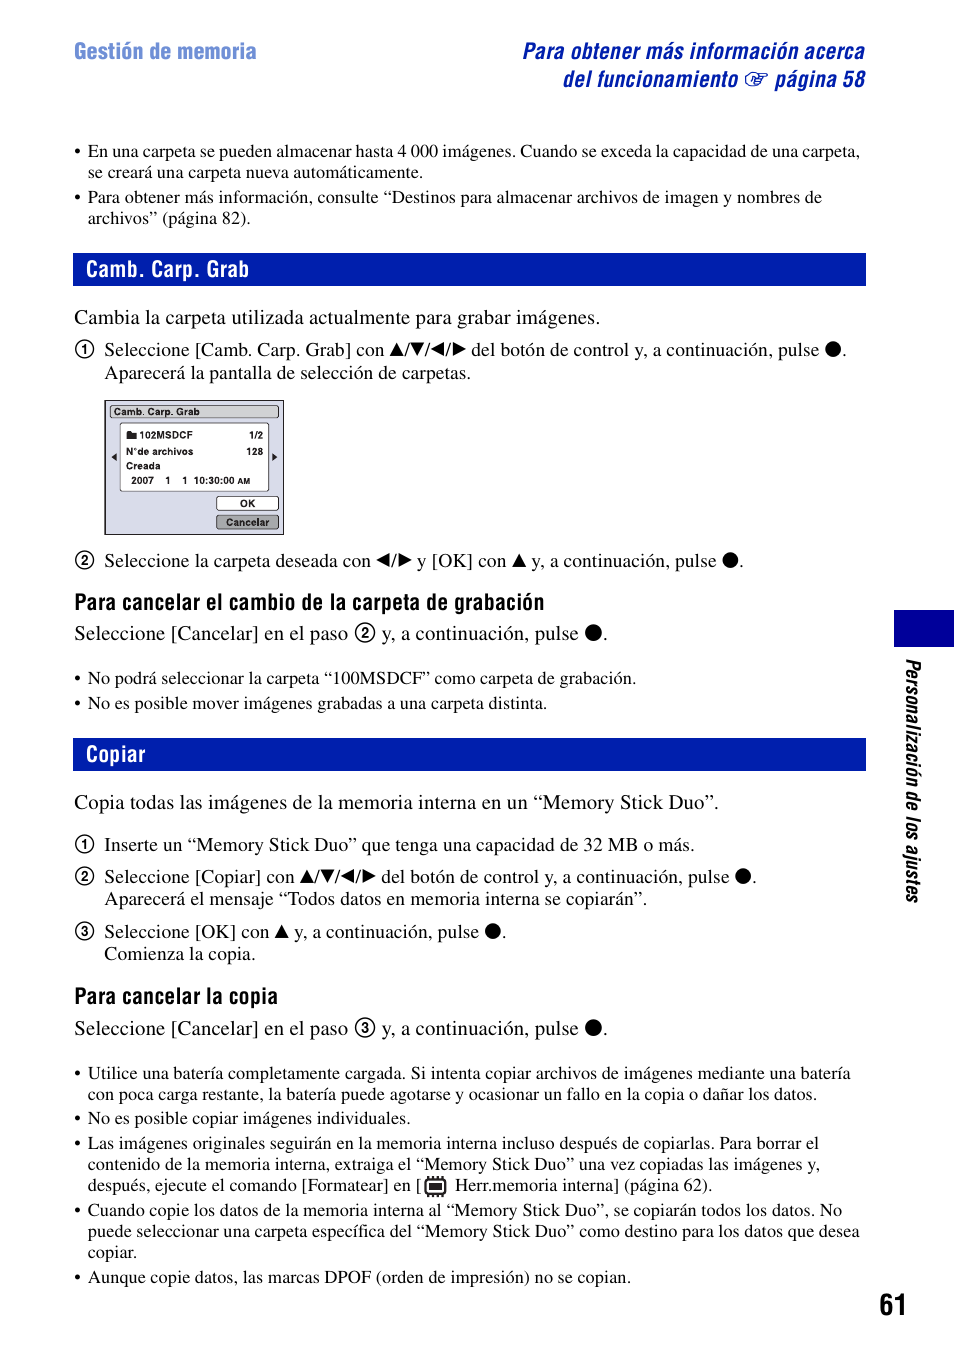 Camb. carp. grab, Copiar, Camb. carp. grab copiar | Sony DSC-T100 Manual del usuario | Página 61 / 123